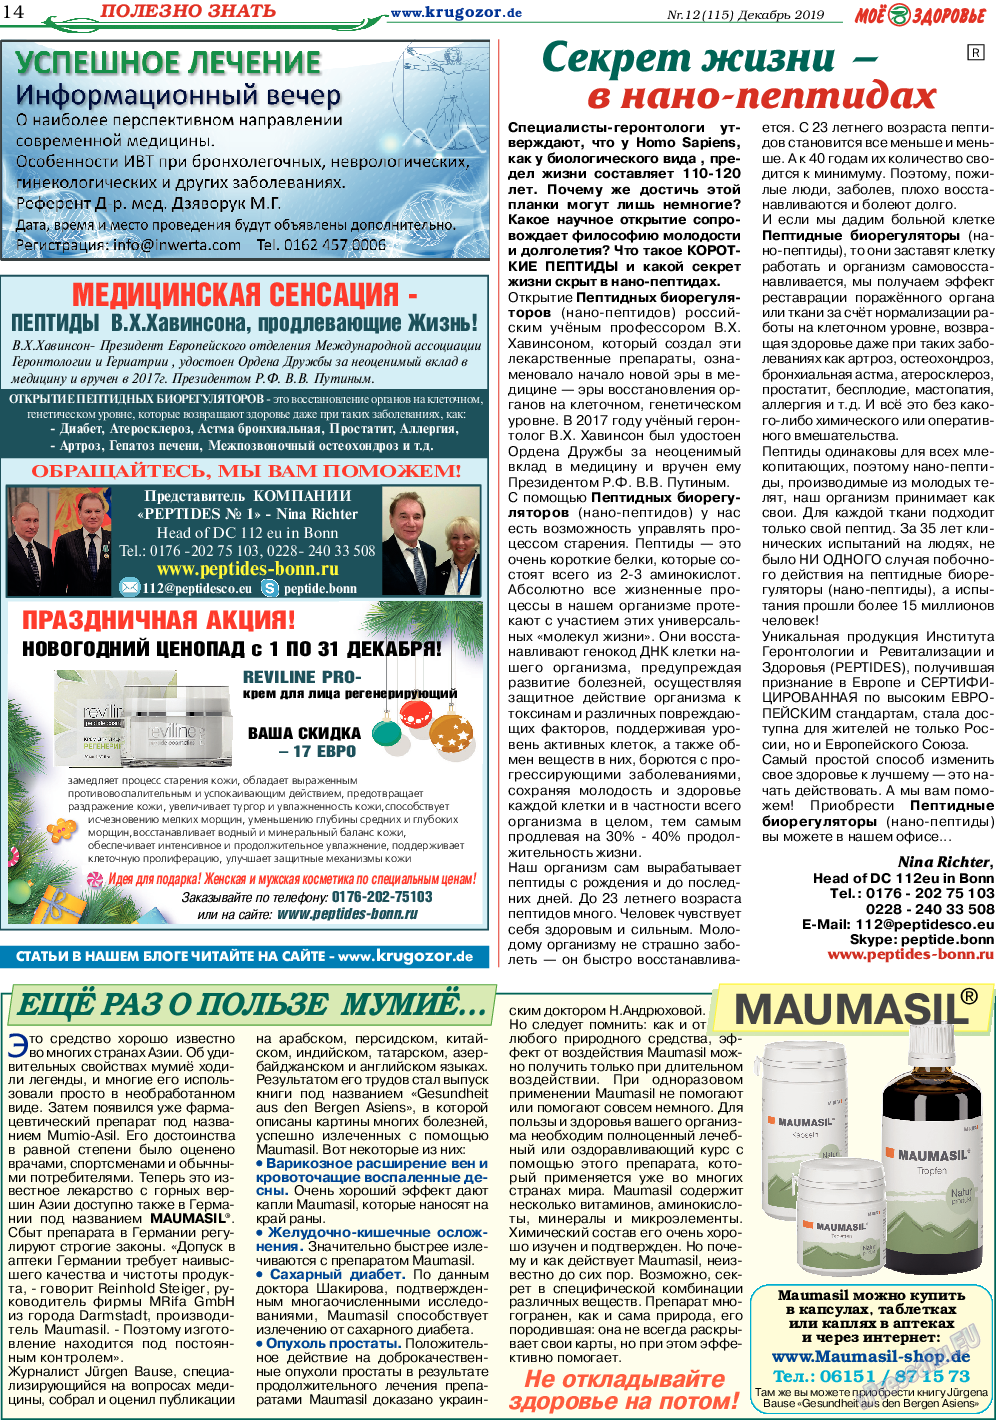 Кругозор, газета. 2019 №12 стр.14